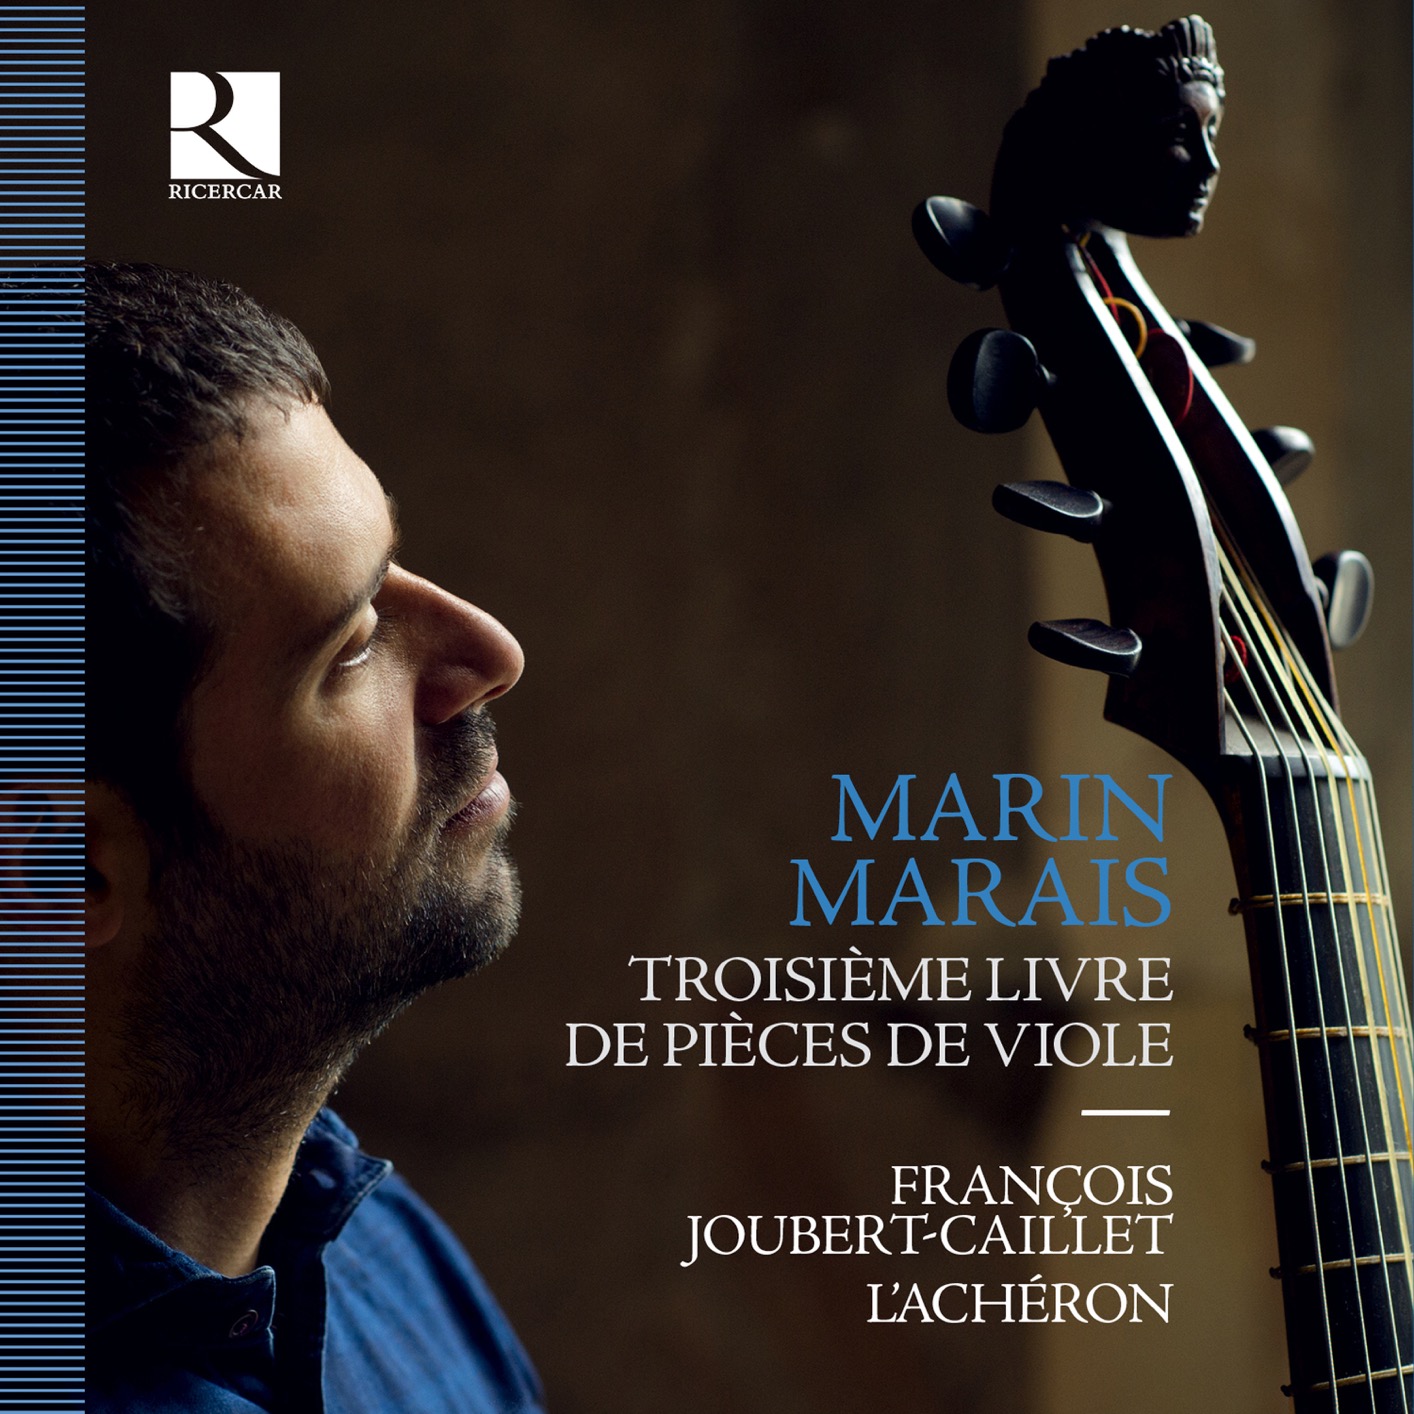 Franccois Joubert-Caillet & L’Acheron – Marais – Troisieme livre de pieces de viole (2021) [FLAC 24bit/88,2kHz]